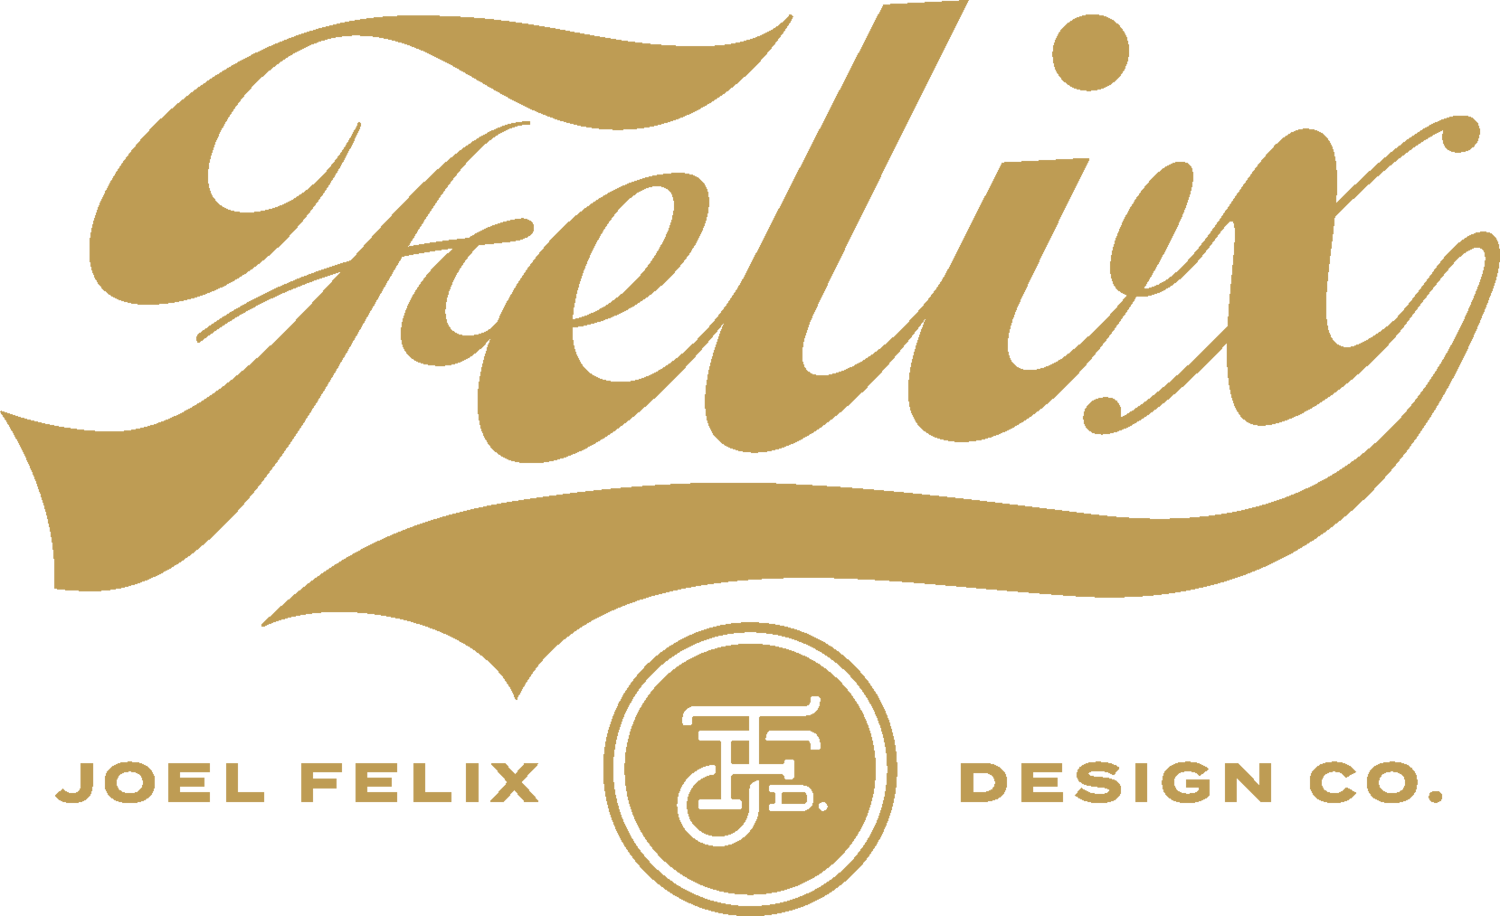 Joel Felix Design Studio